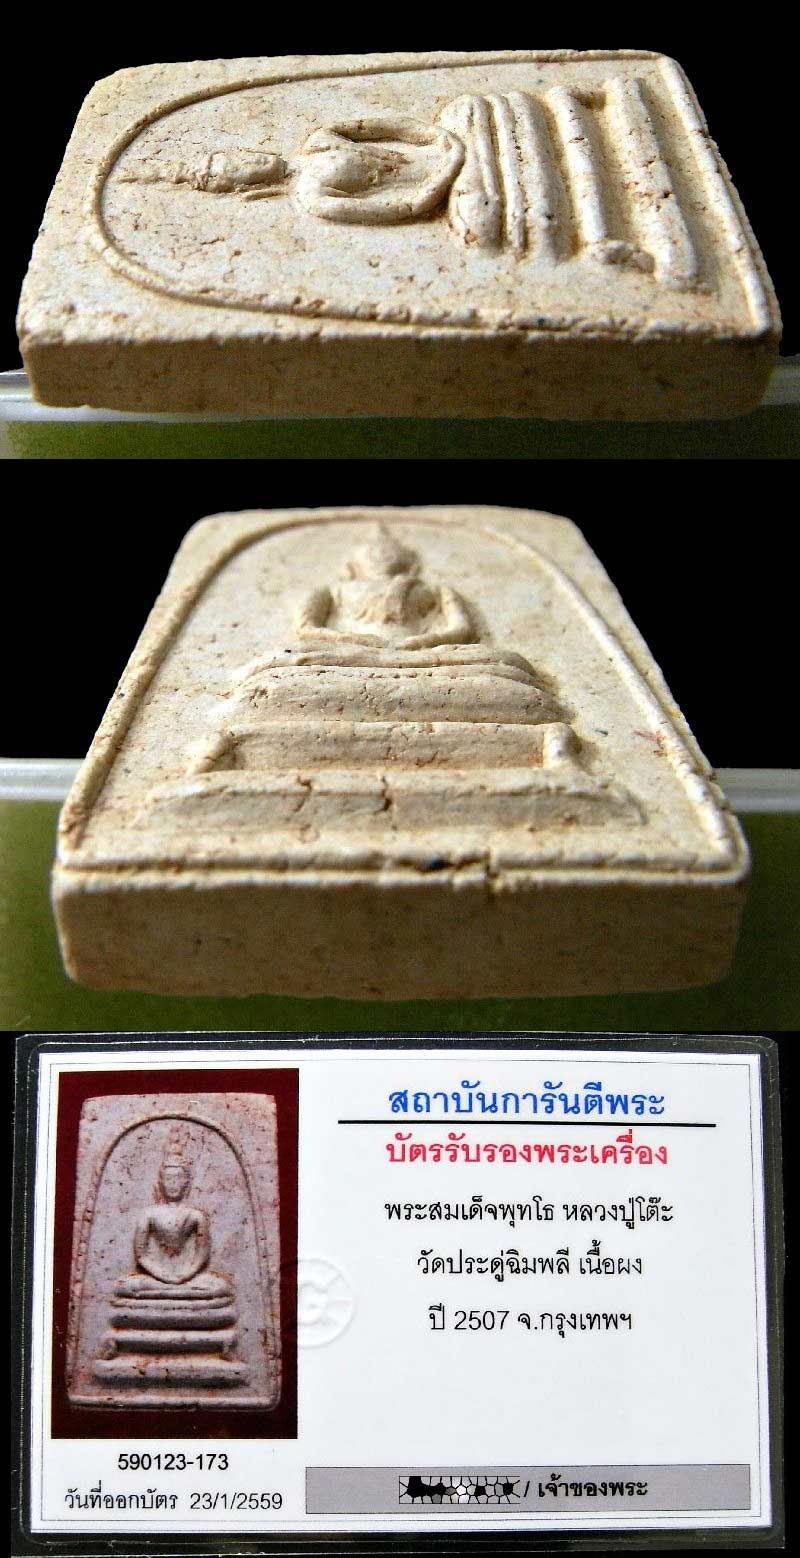 สวยเทพ หลวงปู่โต๊ะ วัดประดู่ฉิมพลี ปี 07 เลี่ยมทอง พร้อมบัตรรับรองฯ สมเด็จพุทโธ หลังยันต์เฑาะว์  - 5